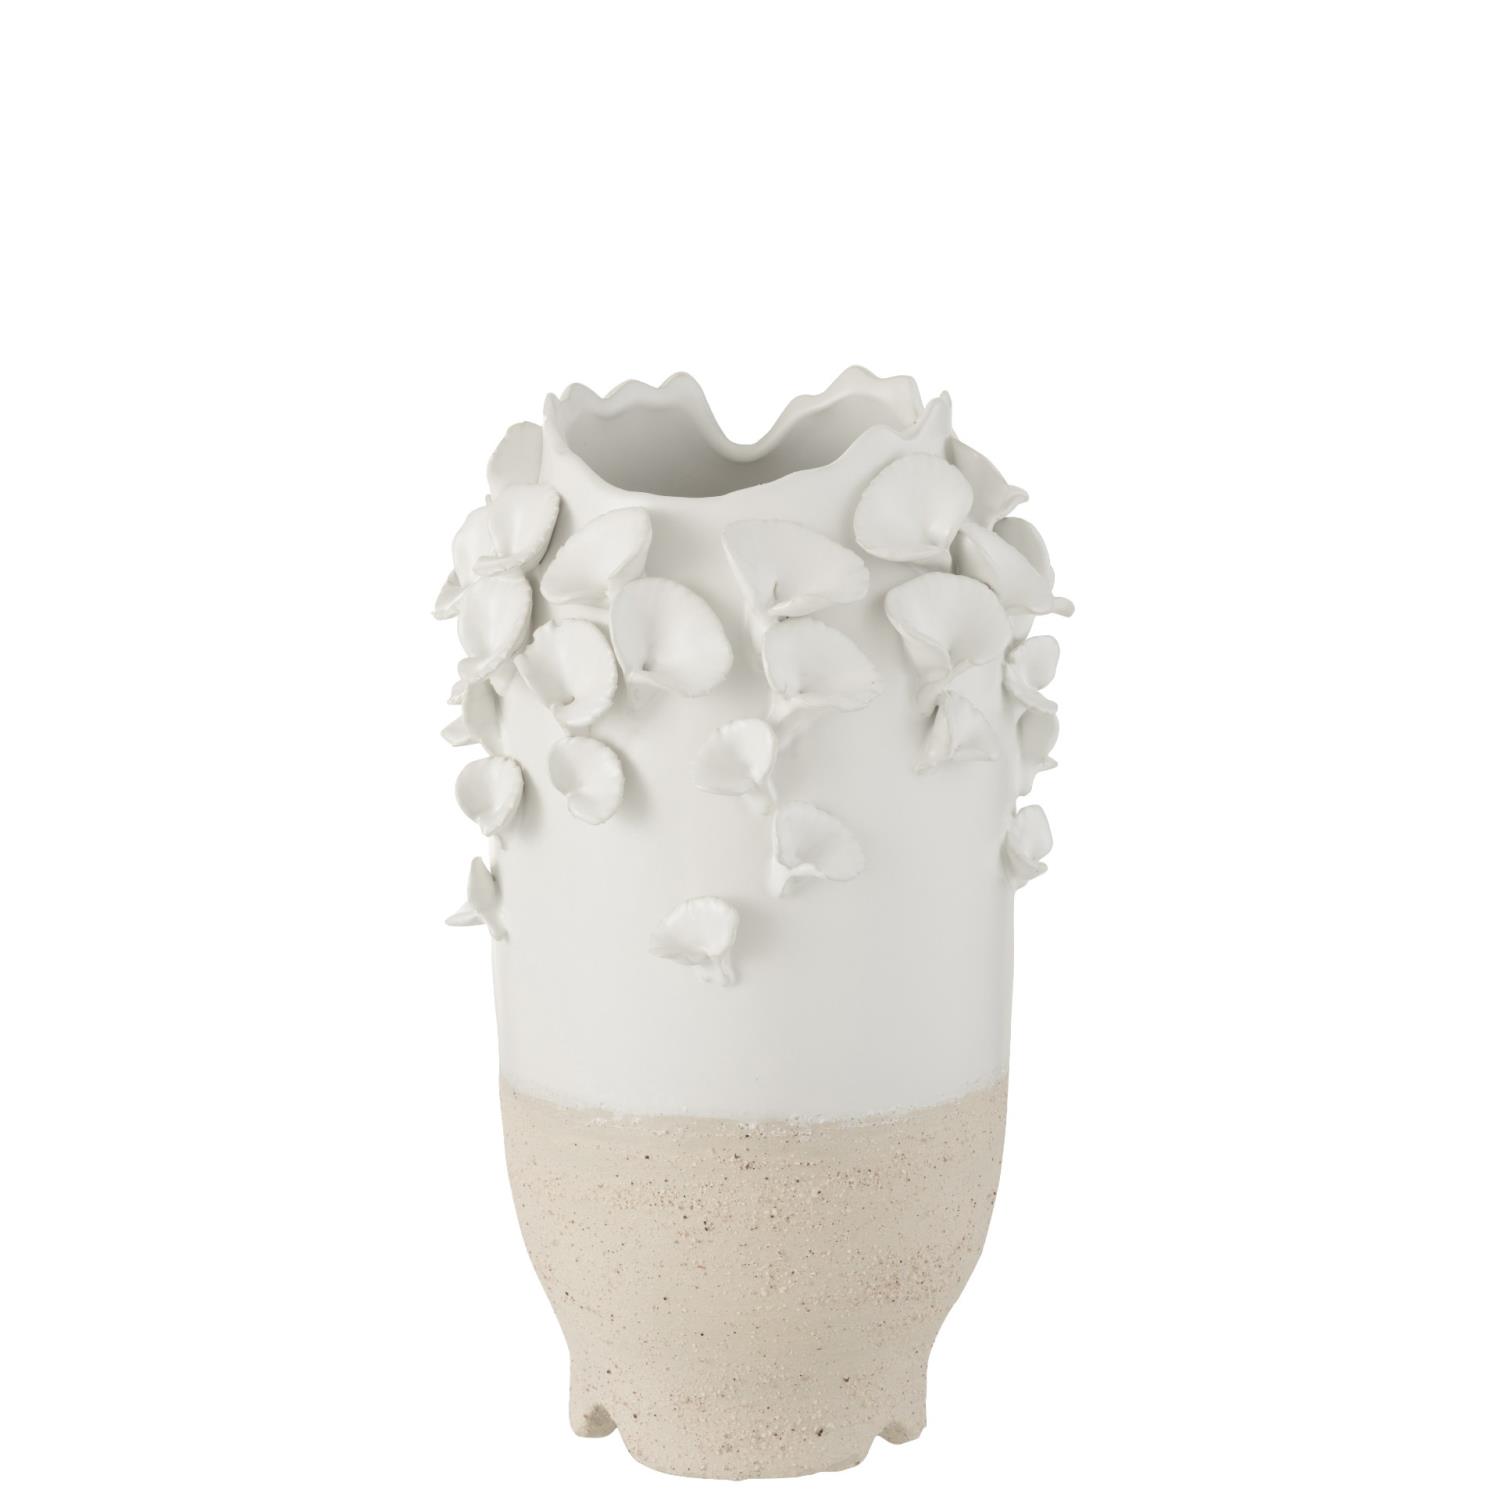 Vase Anemone Ceramic White/Beige 22x22x38cm 1148